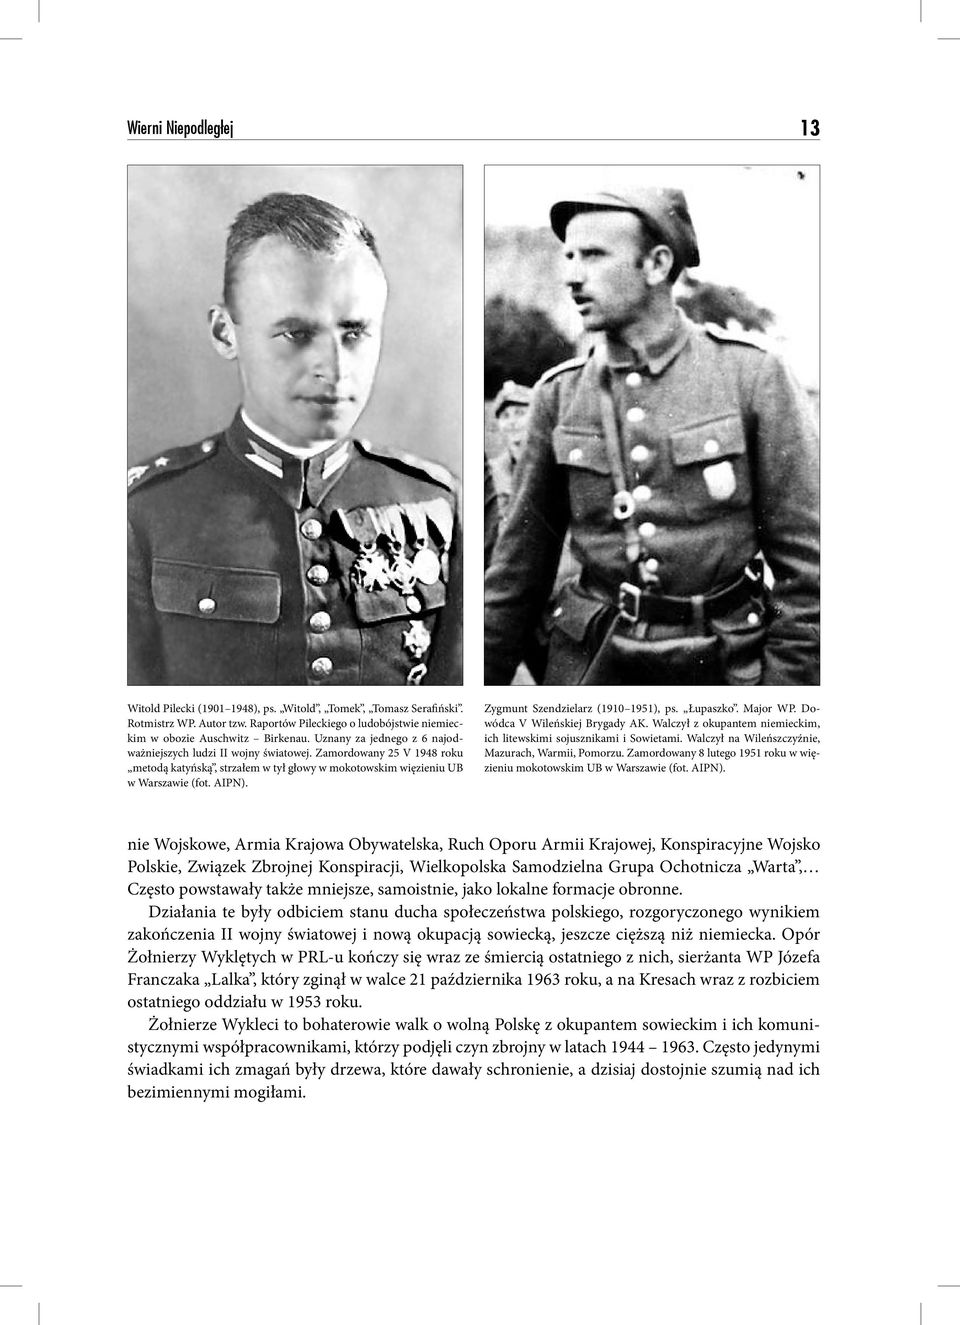 Zygmunt Szendzielarz (1910 1951), ps. Łupaszko. Major WP. Dowódca V Wileńskiej Brygady AK. Walczył z okupantem niemieckim, ich litewskimi sojusznikami i Sowietami.